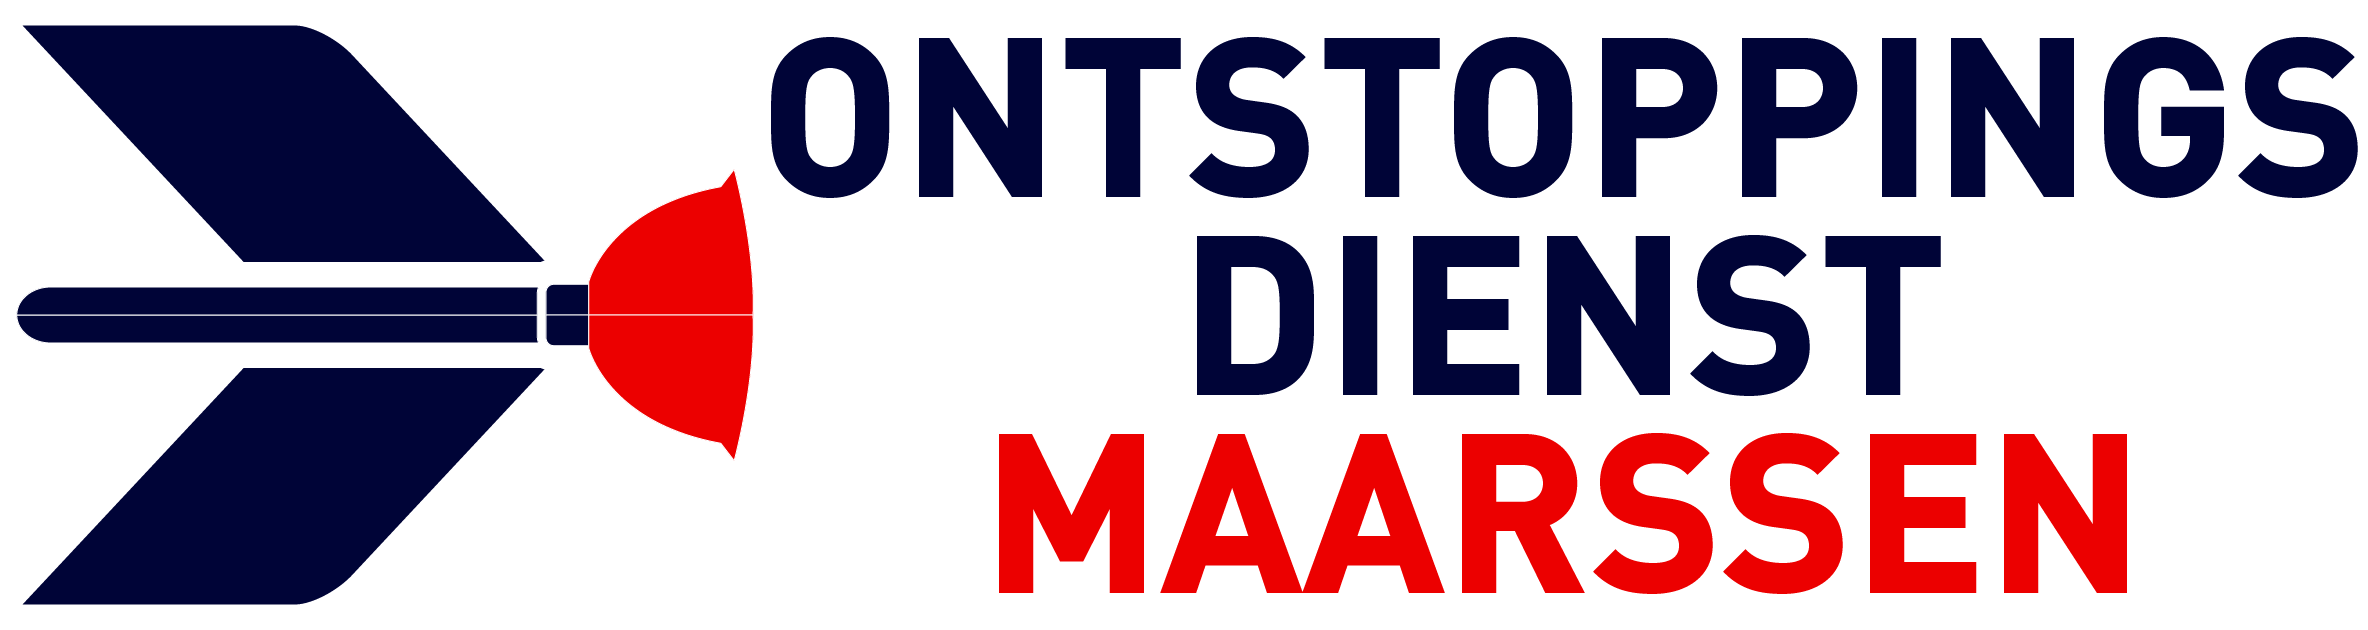 Ontstoppingsdienst Maarssen logo